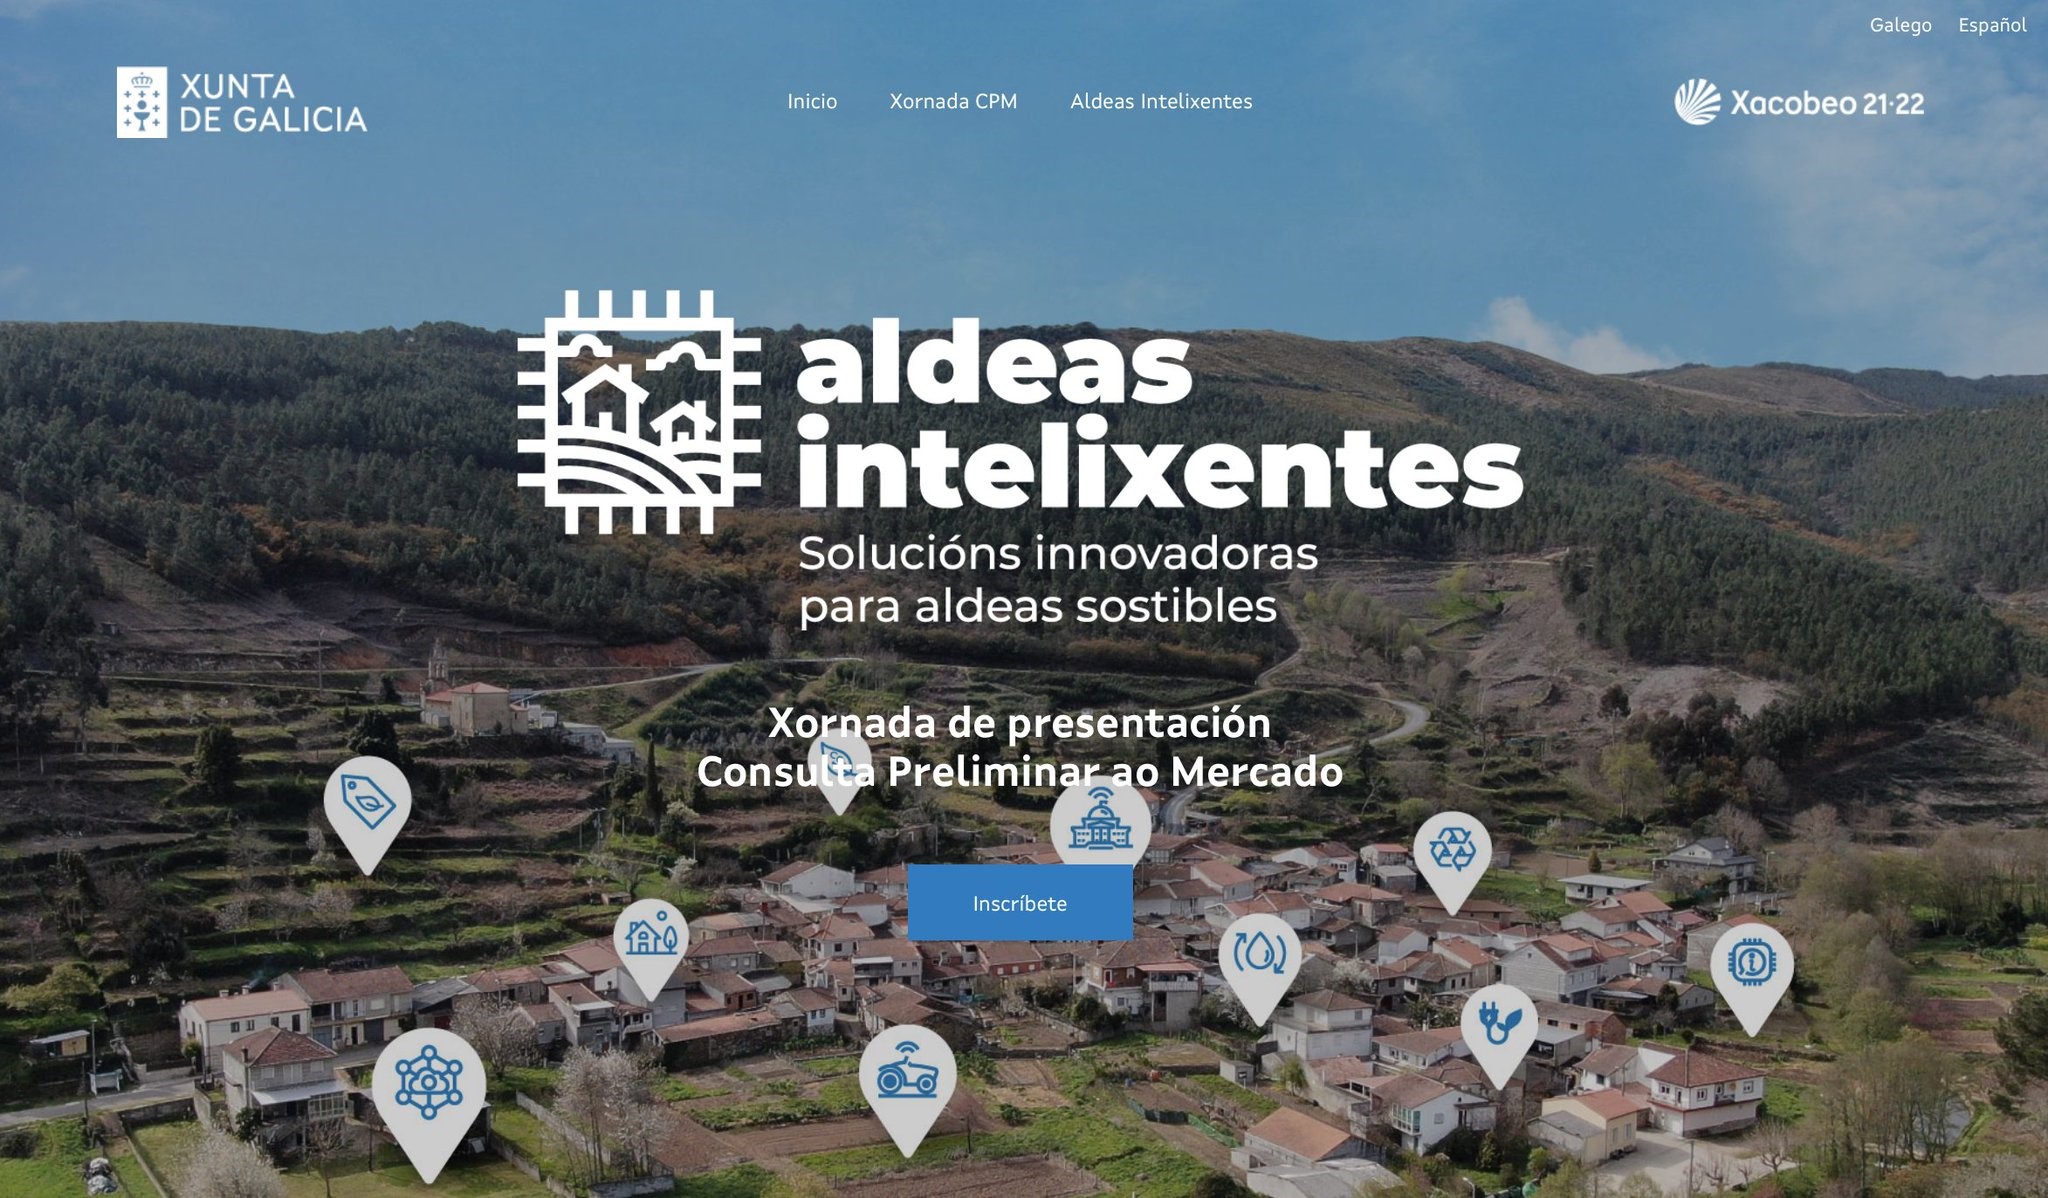 La Xunta recibe casi 170 propuestas en la convocatoria de consultas preliminares al mercado del plan de innovación de aldeas inteligentes